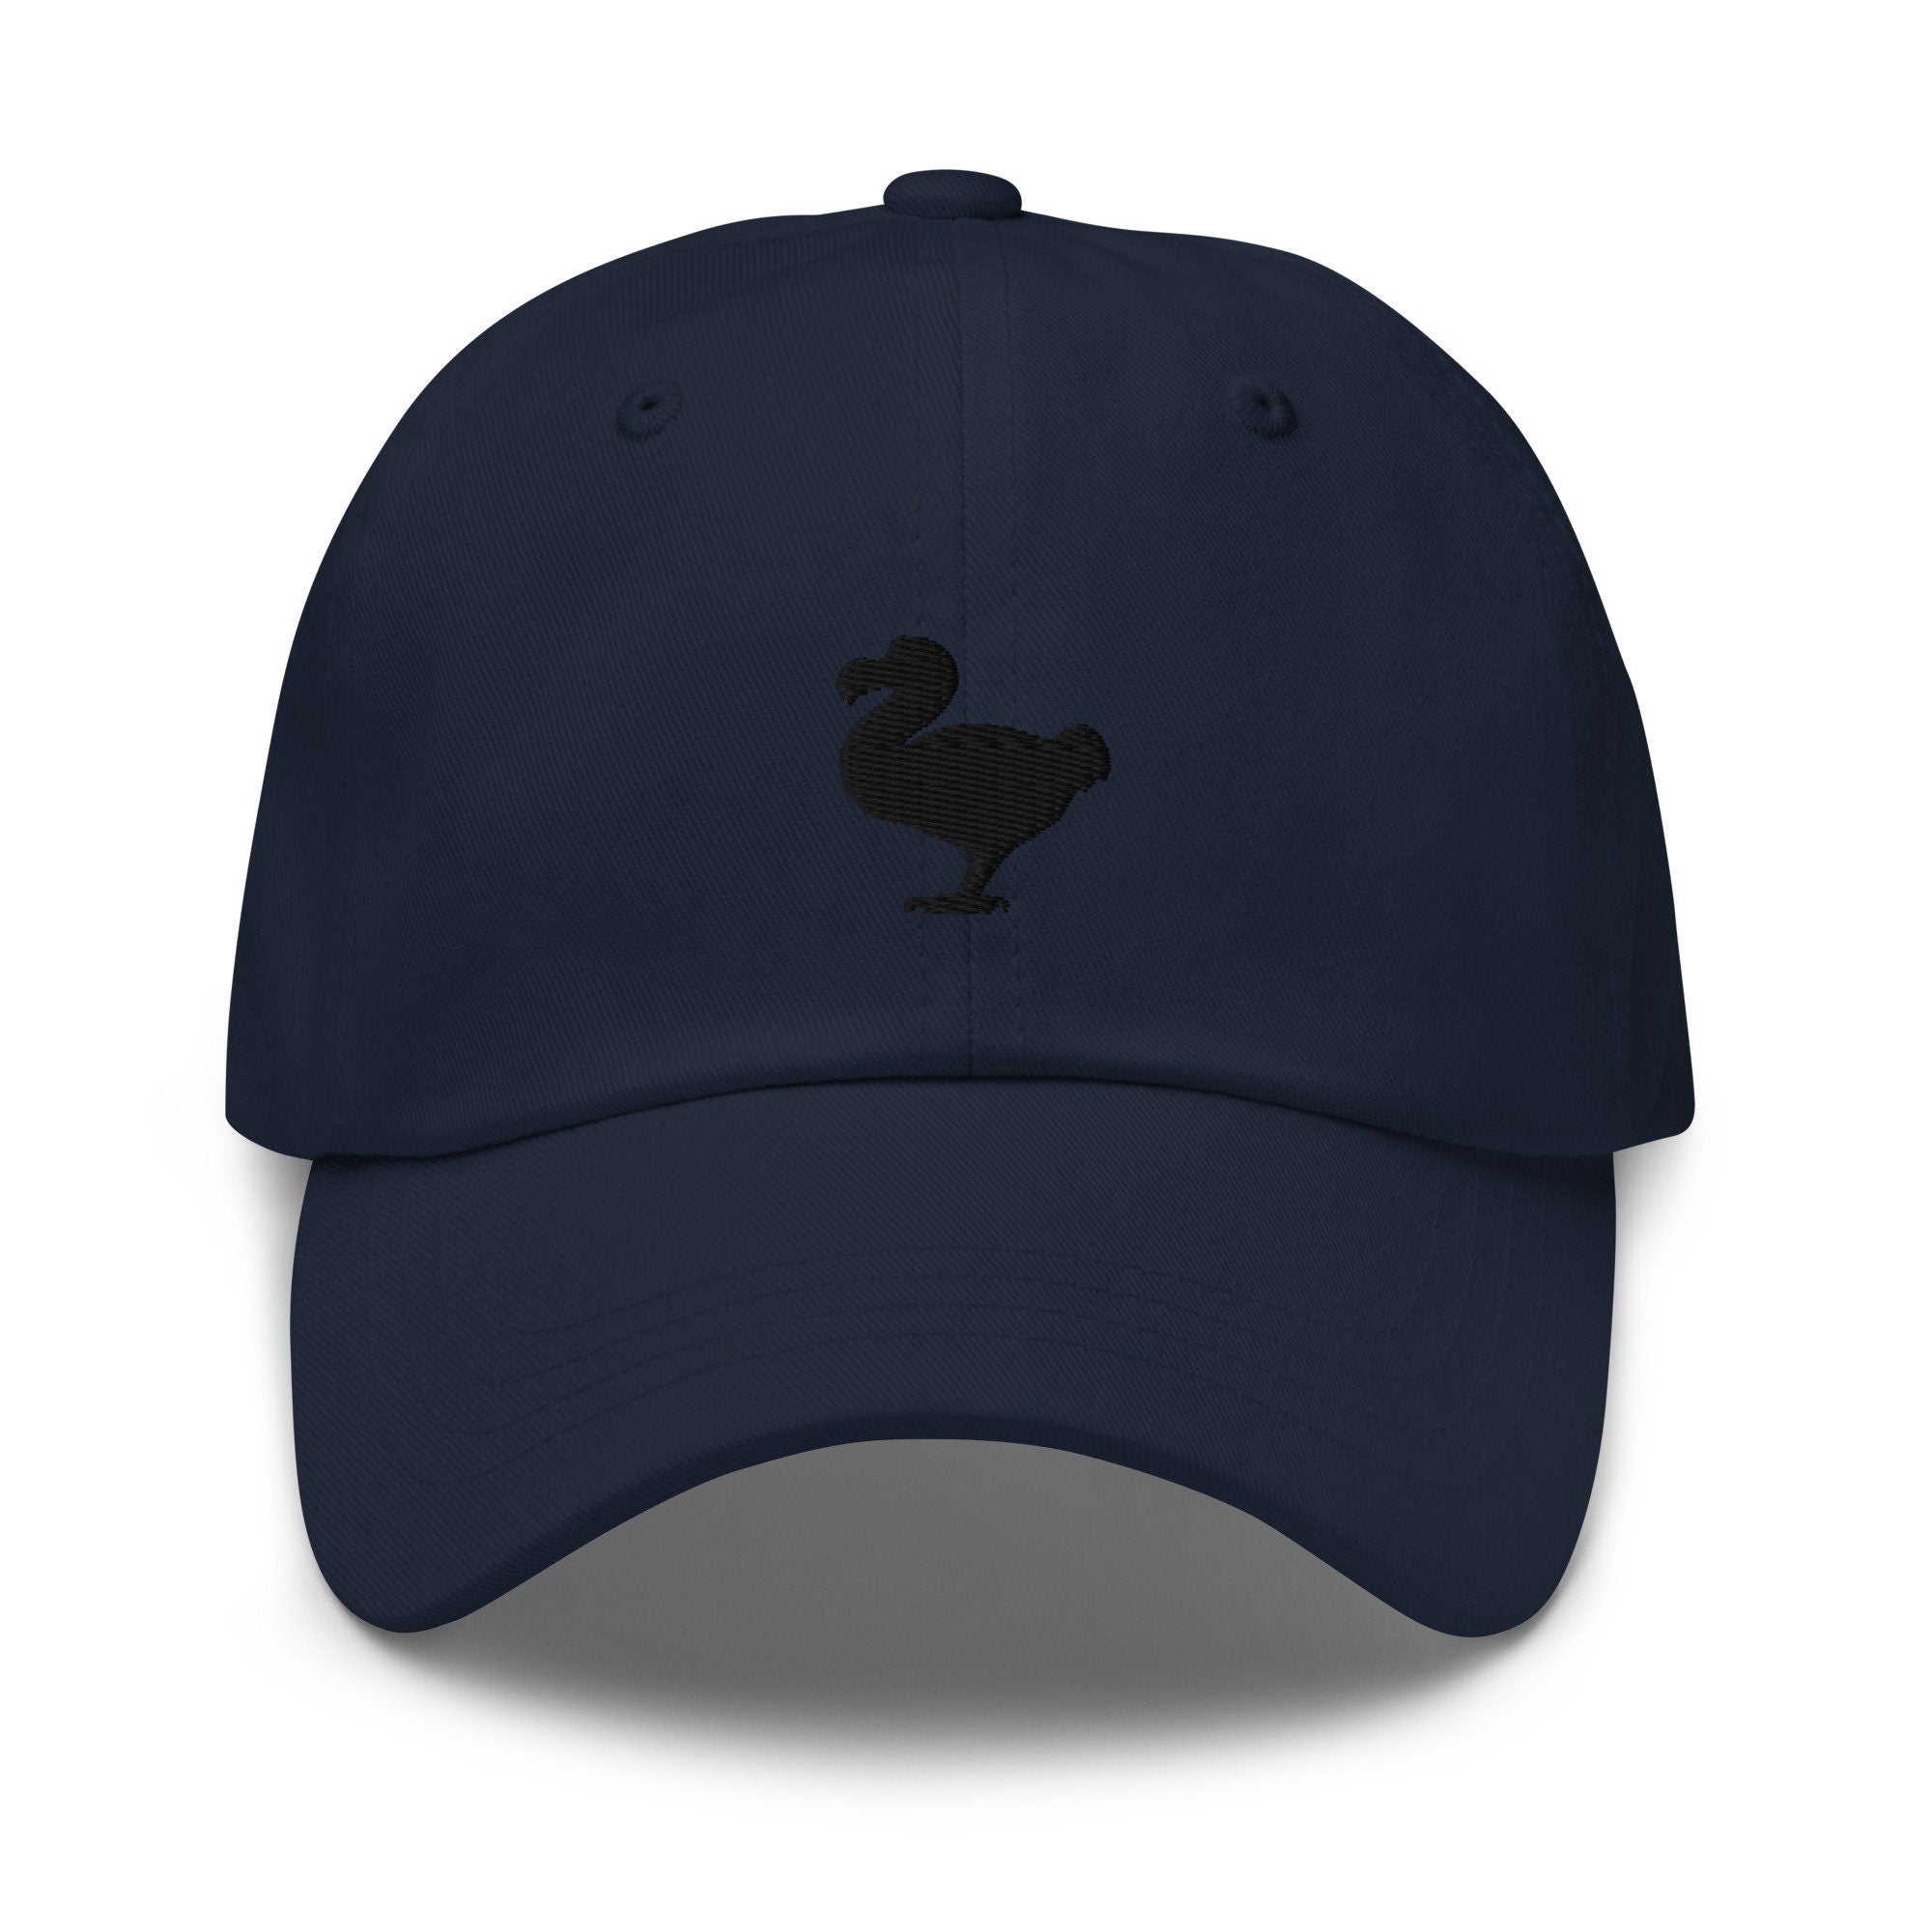 Dodo Bird Embroidered Dad Hat